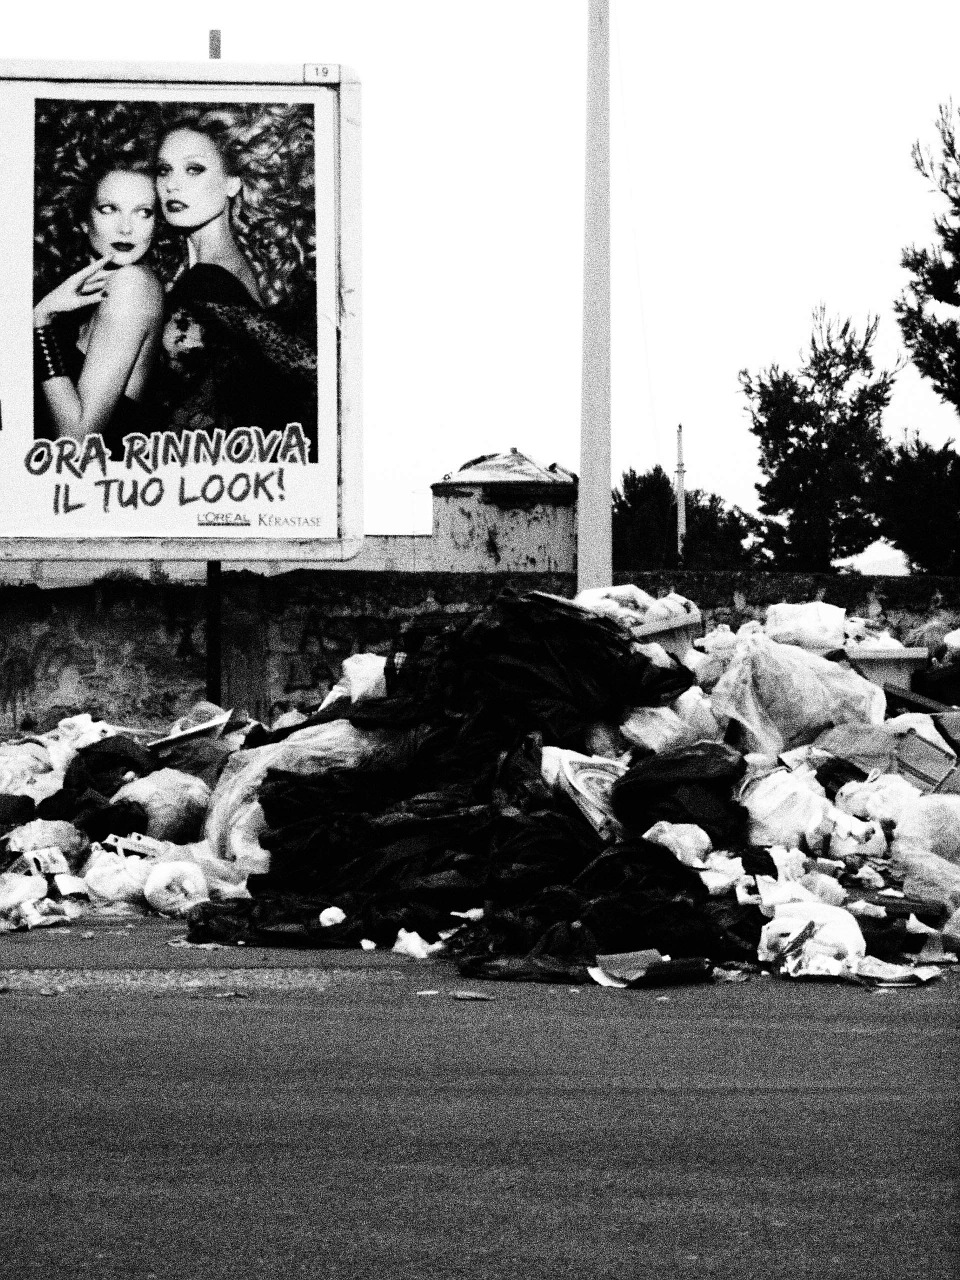 monnezza garbage trash free photo